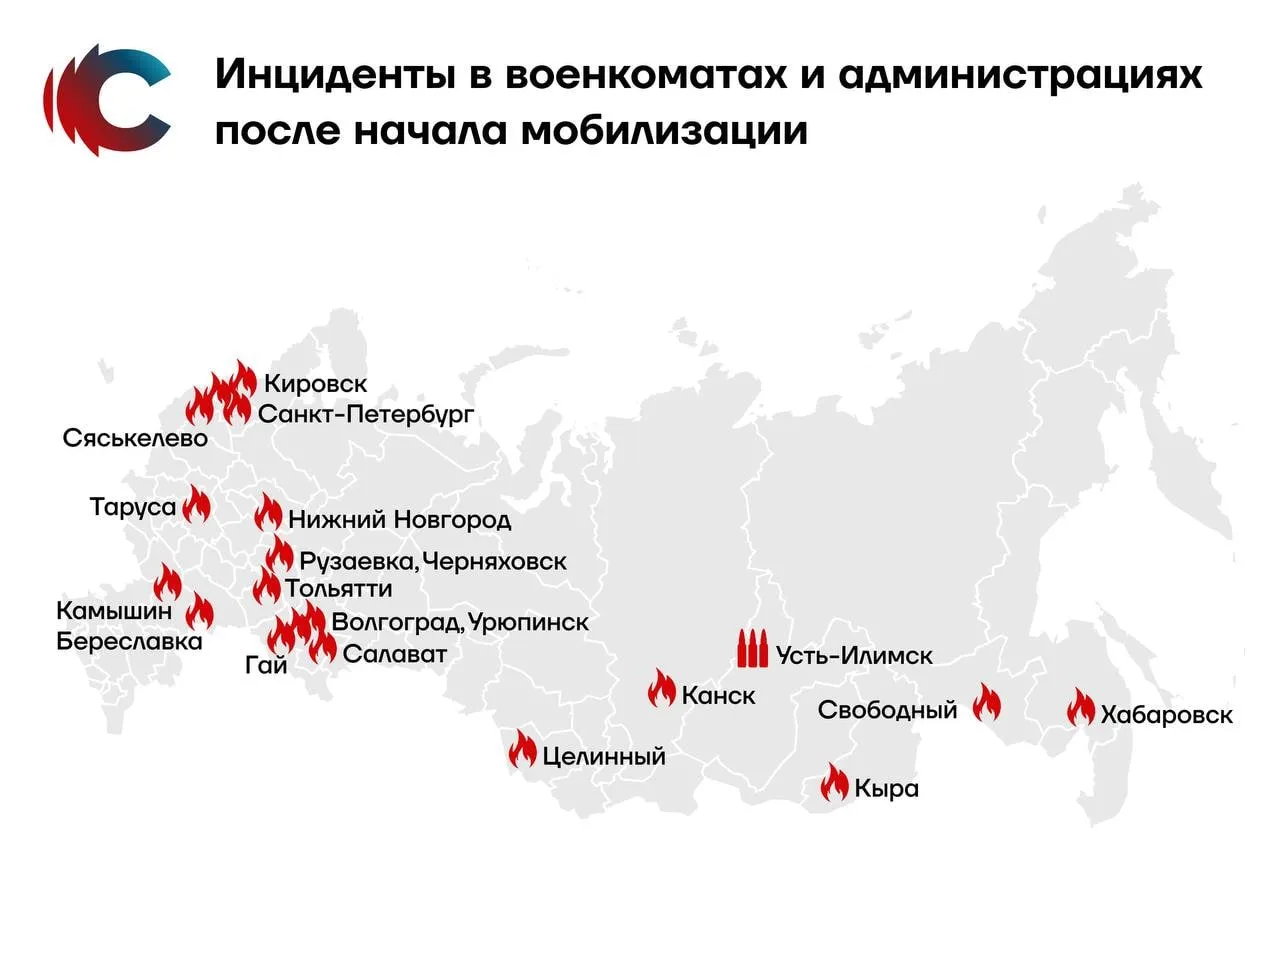 карта инцидентов в военкоматах и администрациях после объявления мобилизации